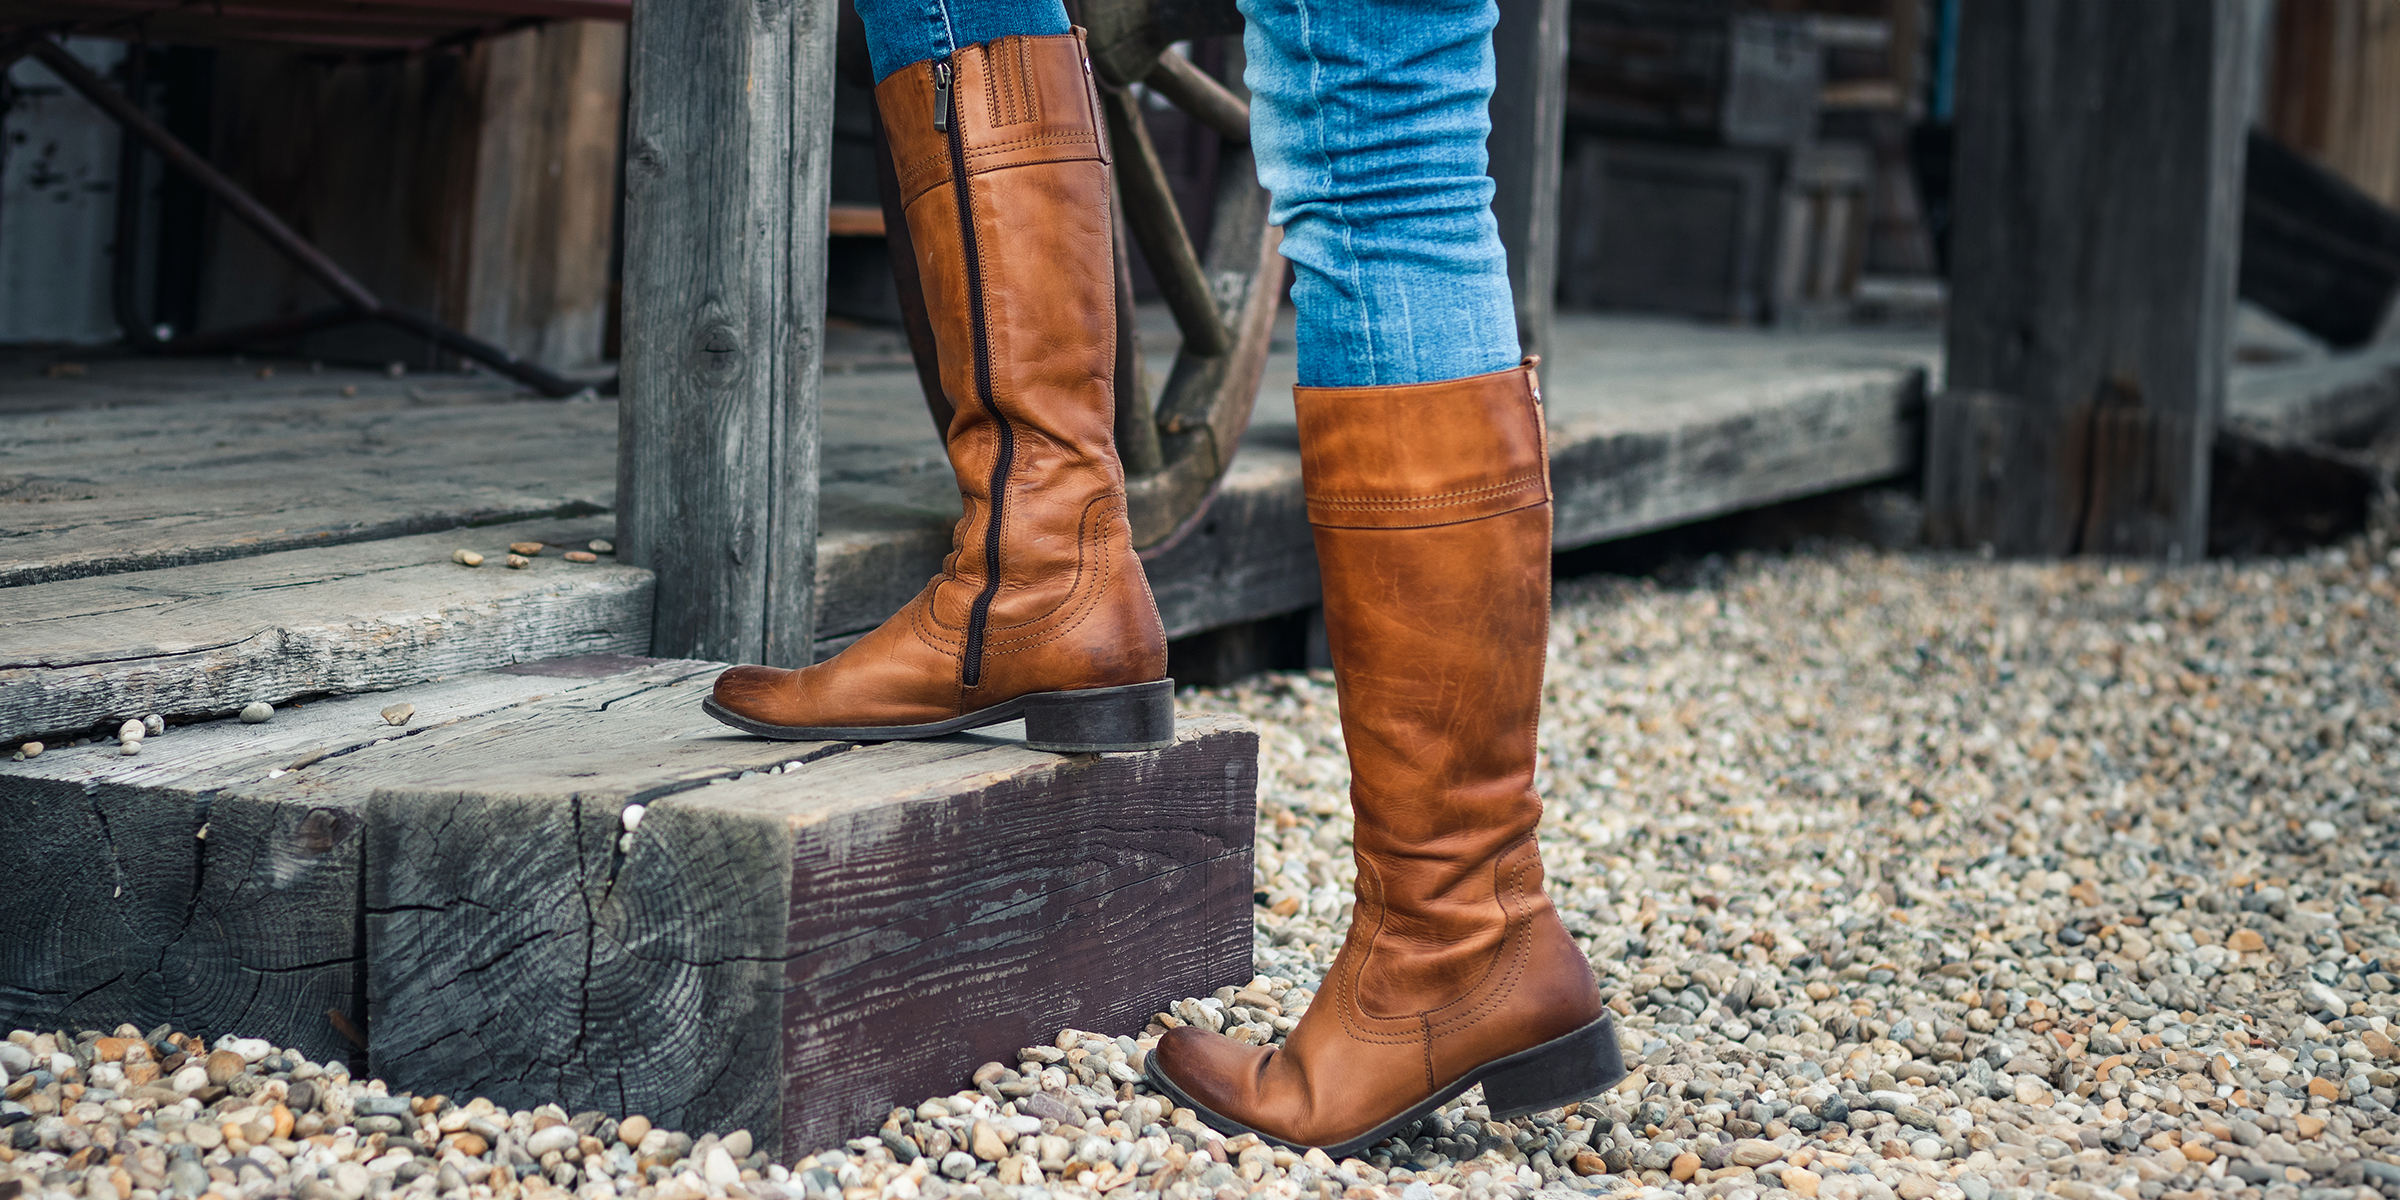 Brown calf-high boots | Source: Shutterstock